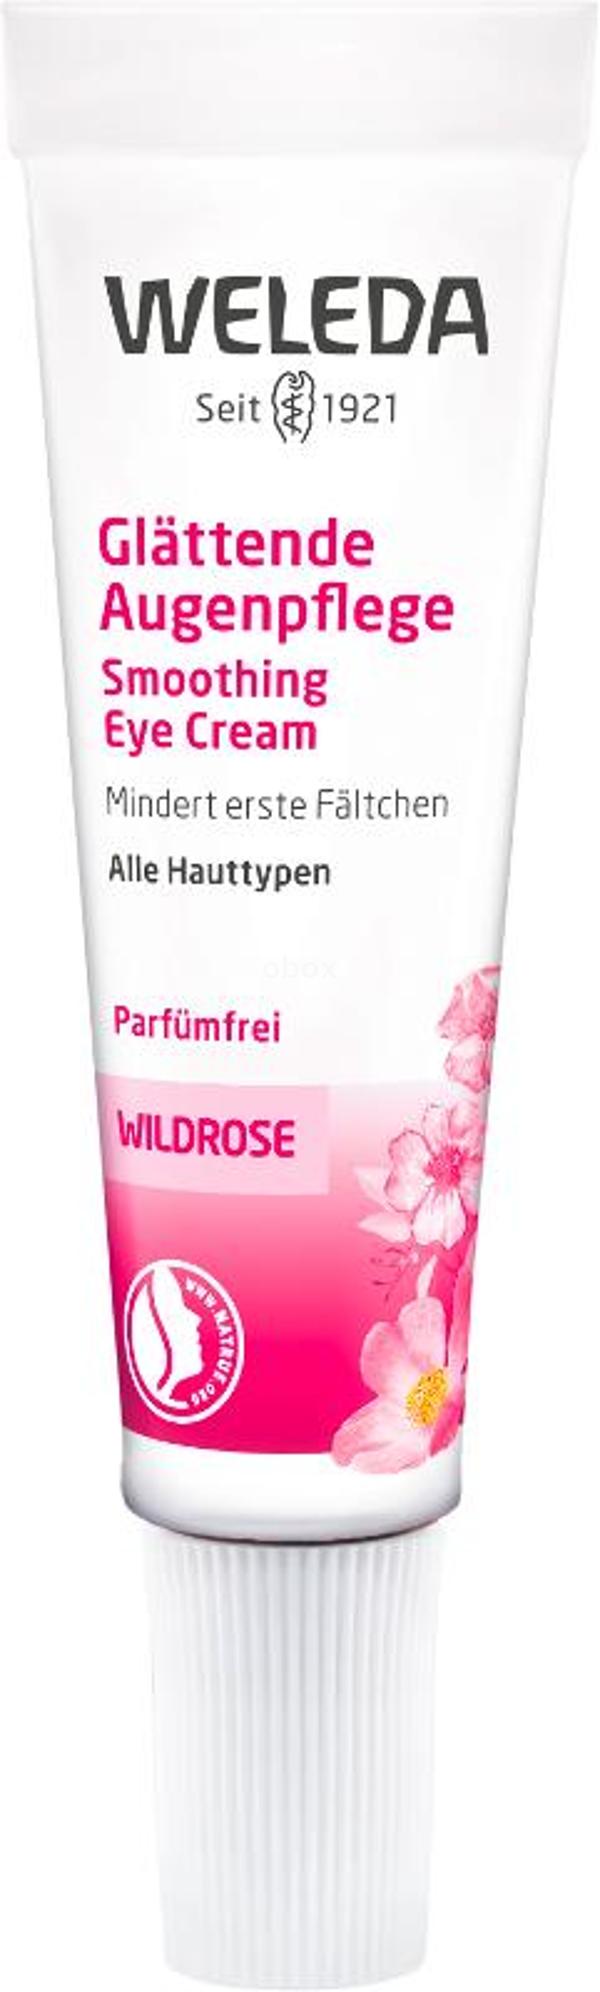 Produktfoto zu Wildrose Glättende Augencreme, 10 ml